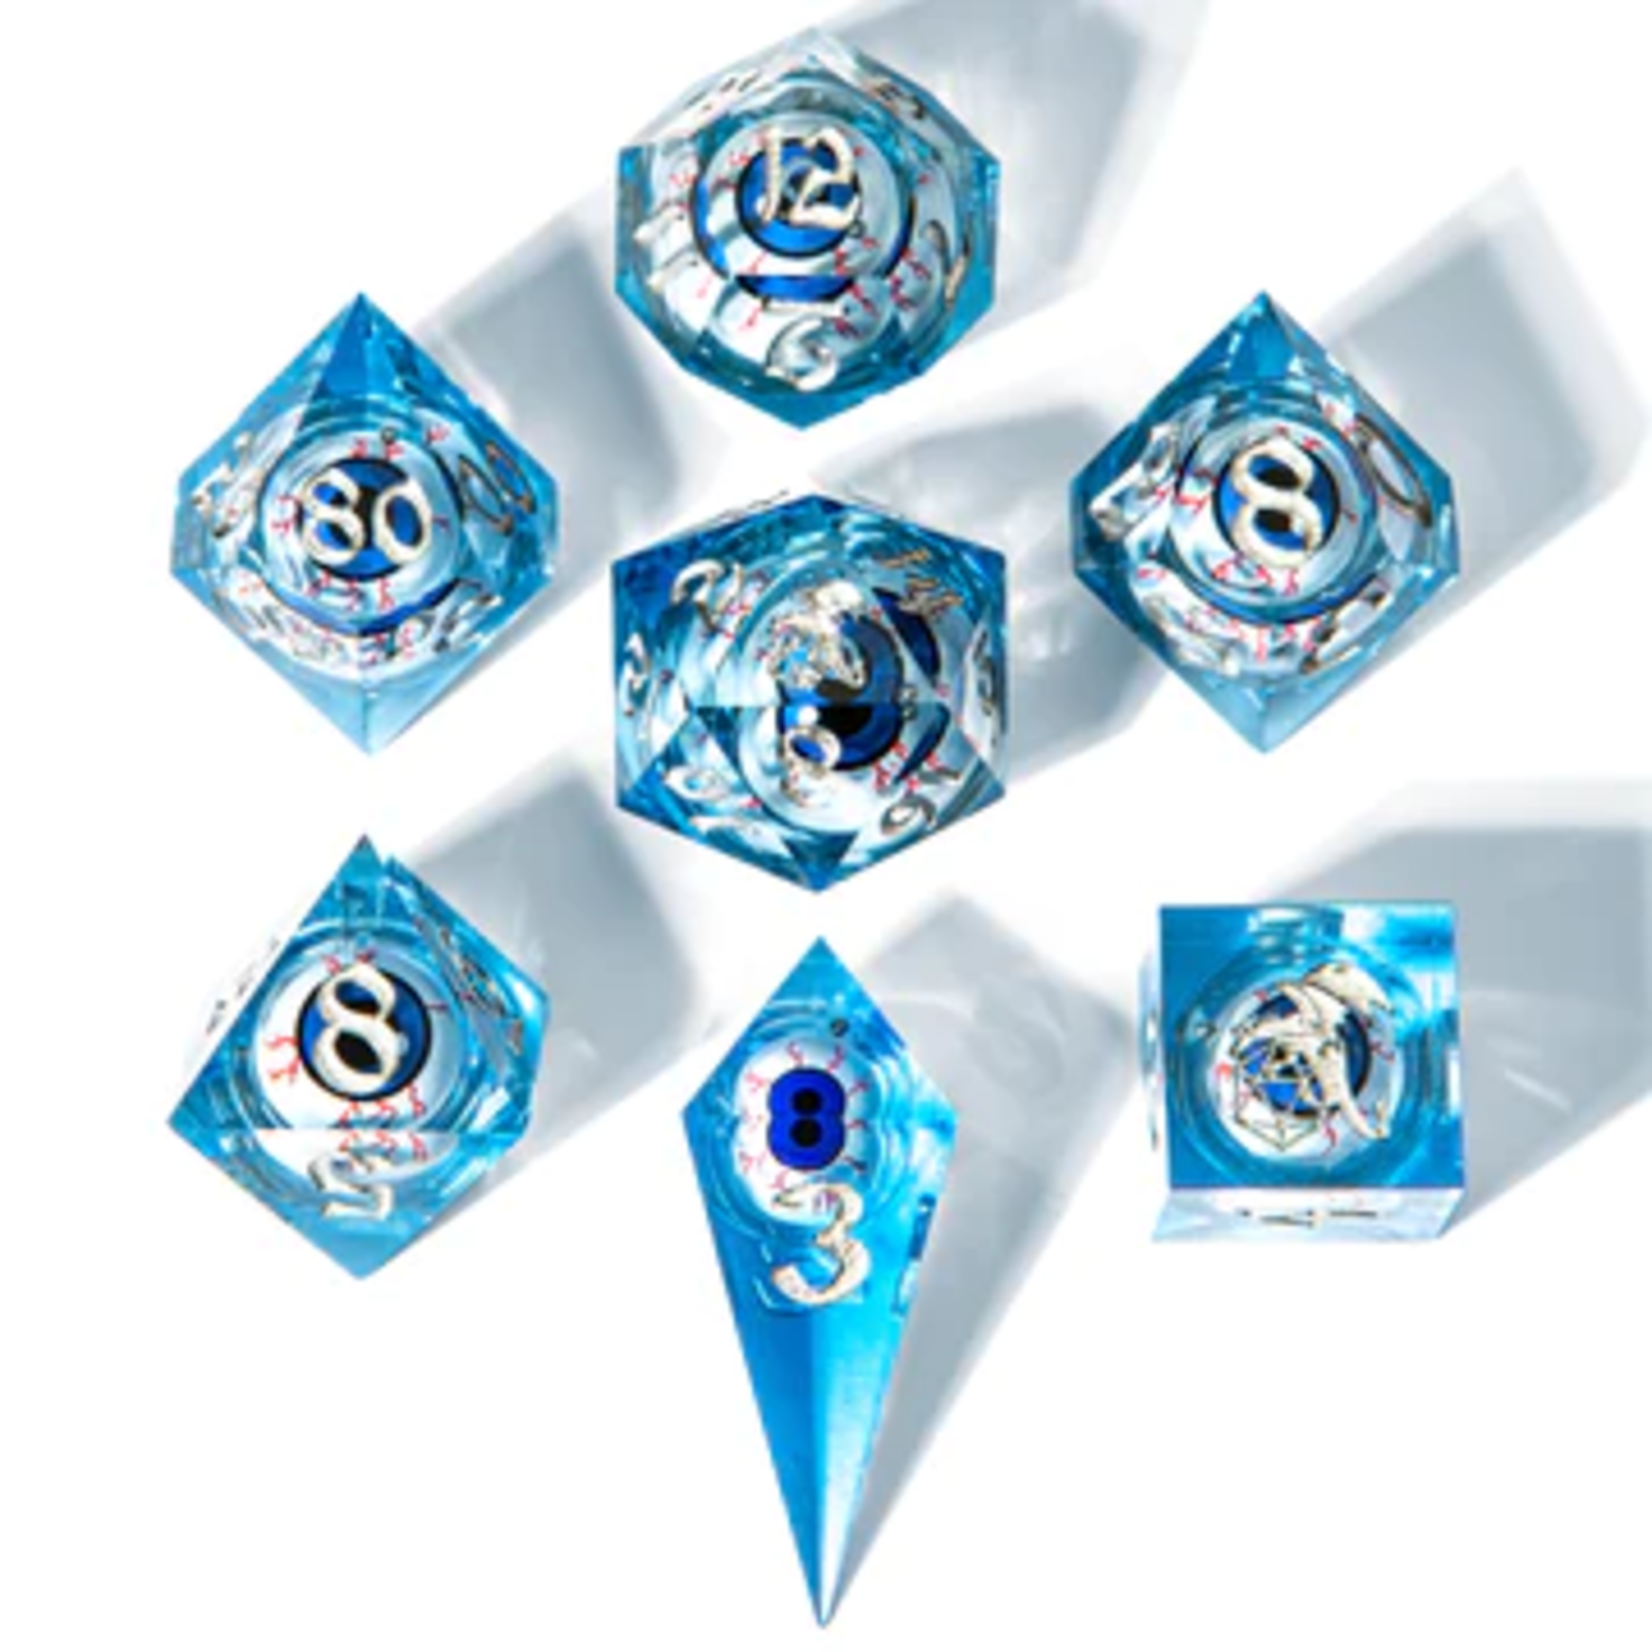 HYMGHO Hymgho Always Watching Blue Eye w/ White Sharp Edge Polyhedral 7 die set